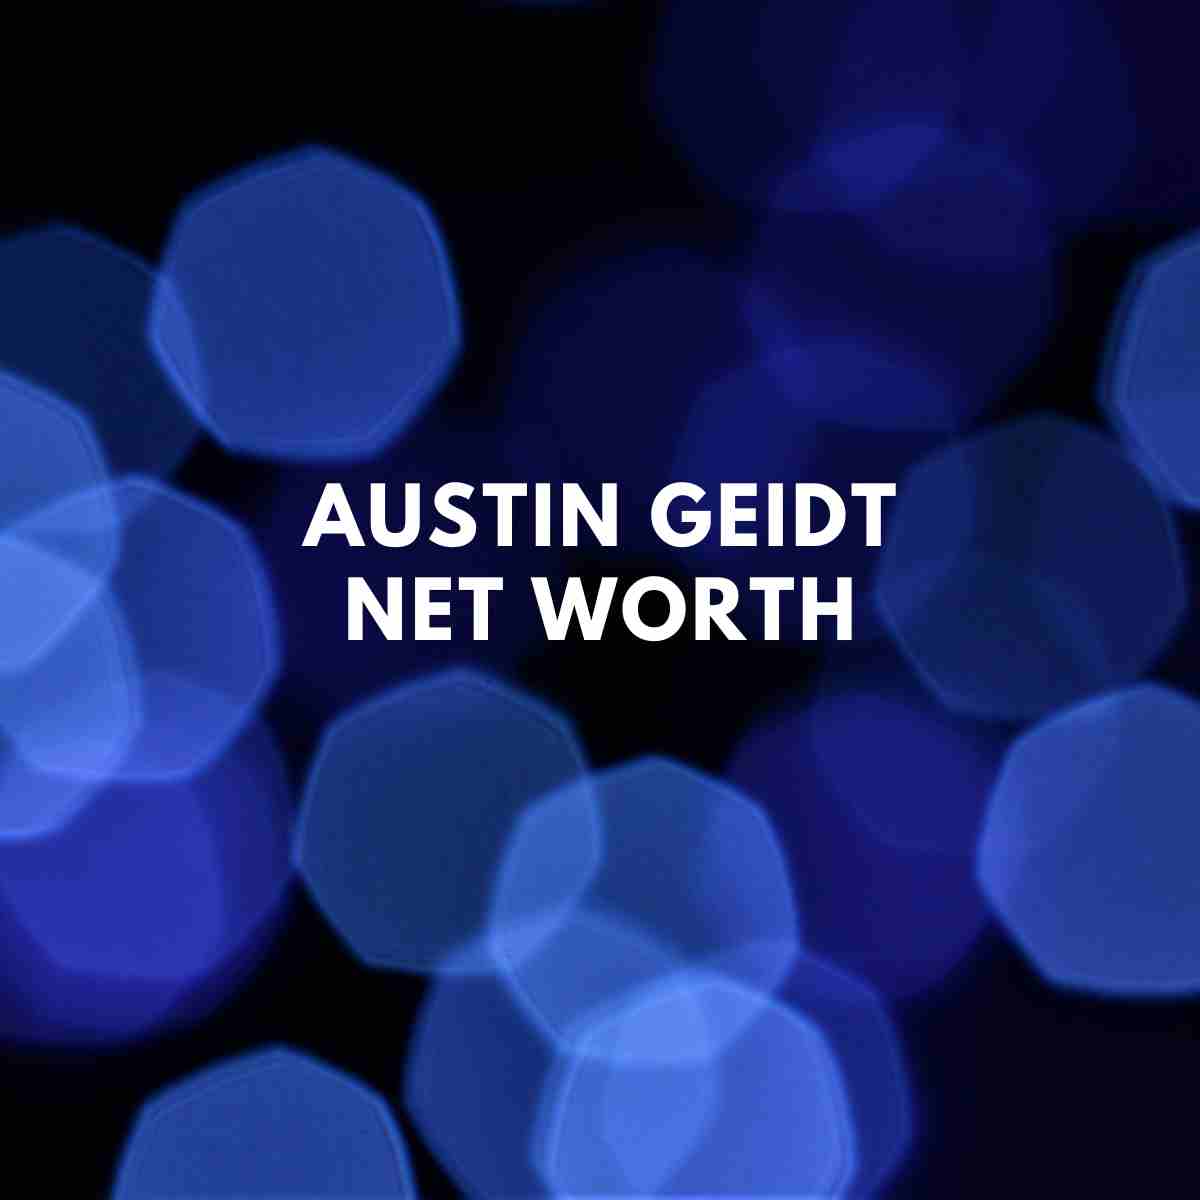 Austin Geidt net worth